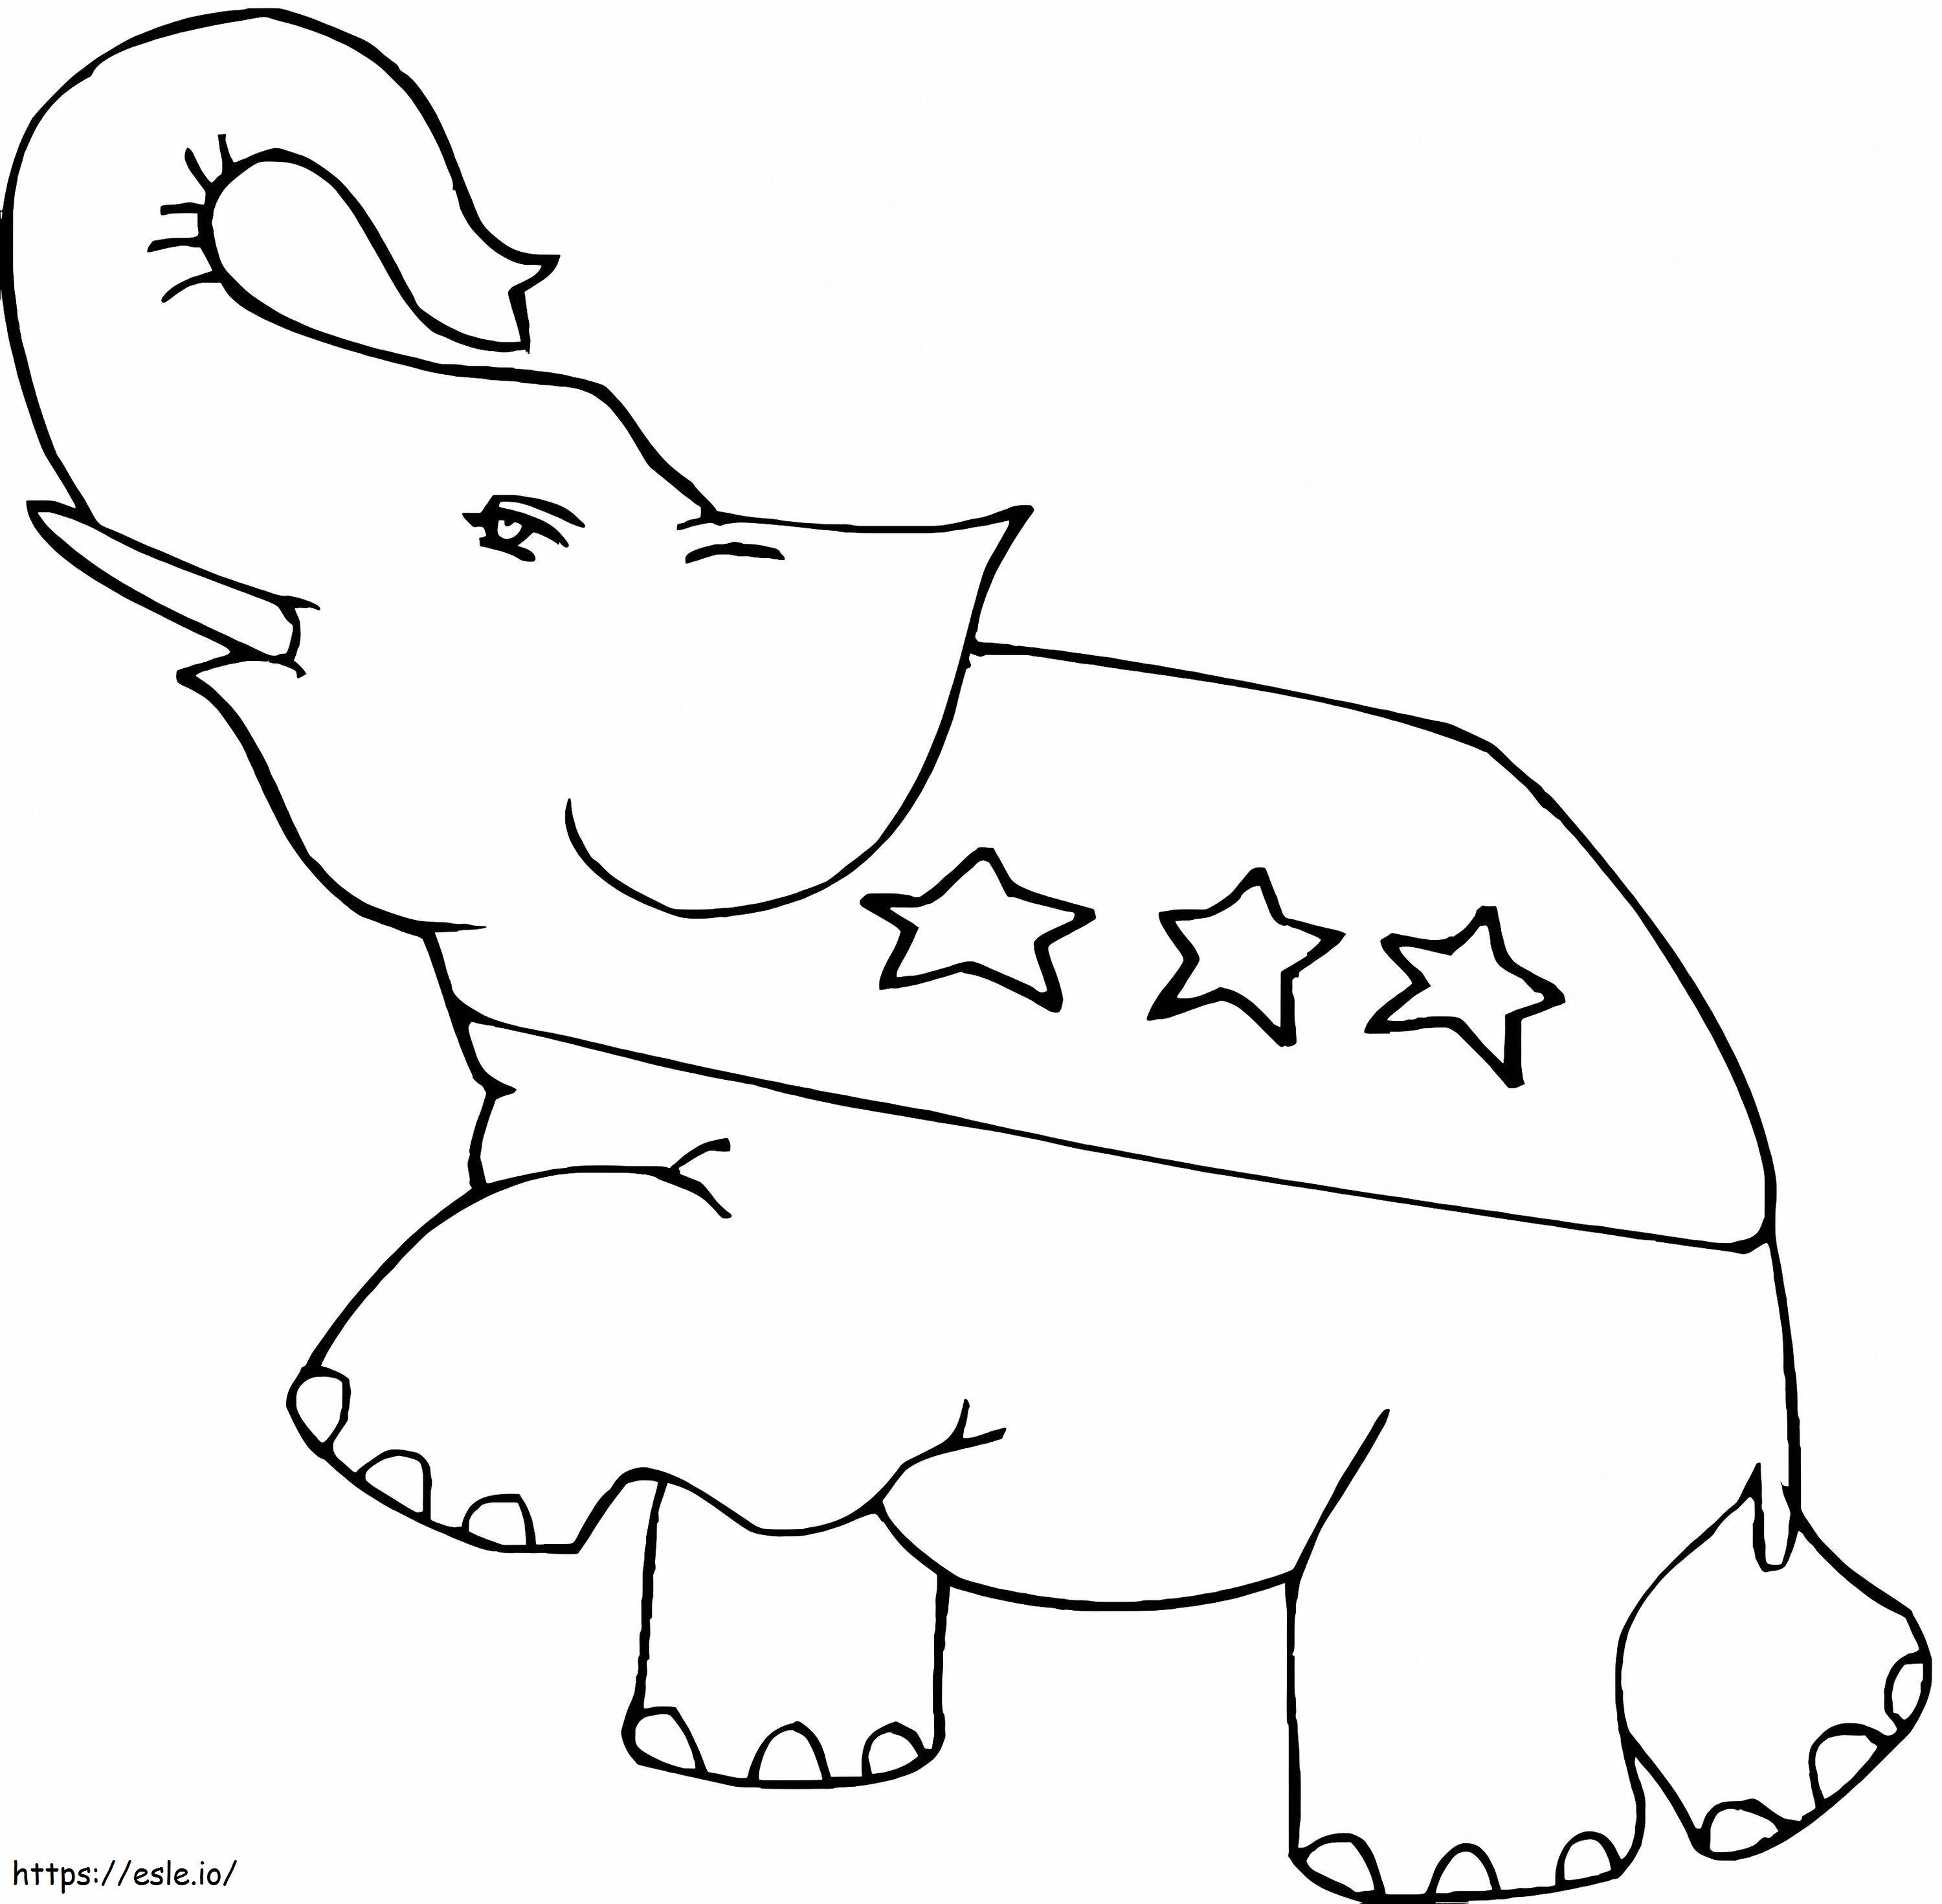 Republikański słoń 1 kolorowanka